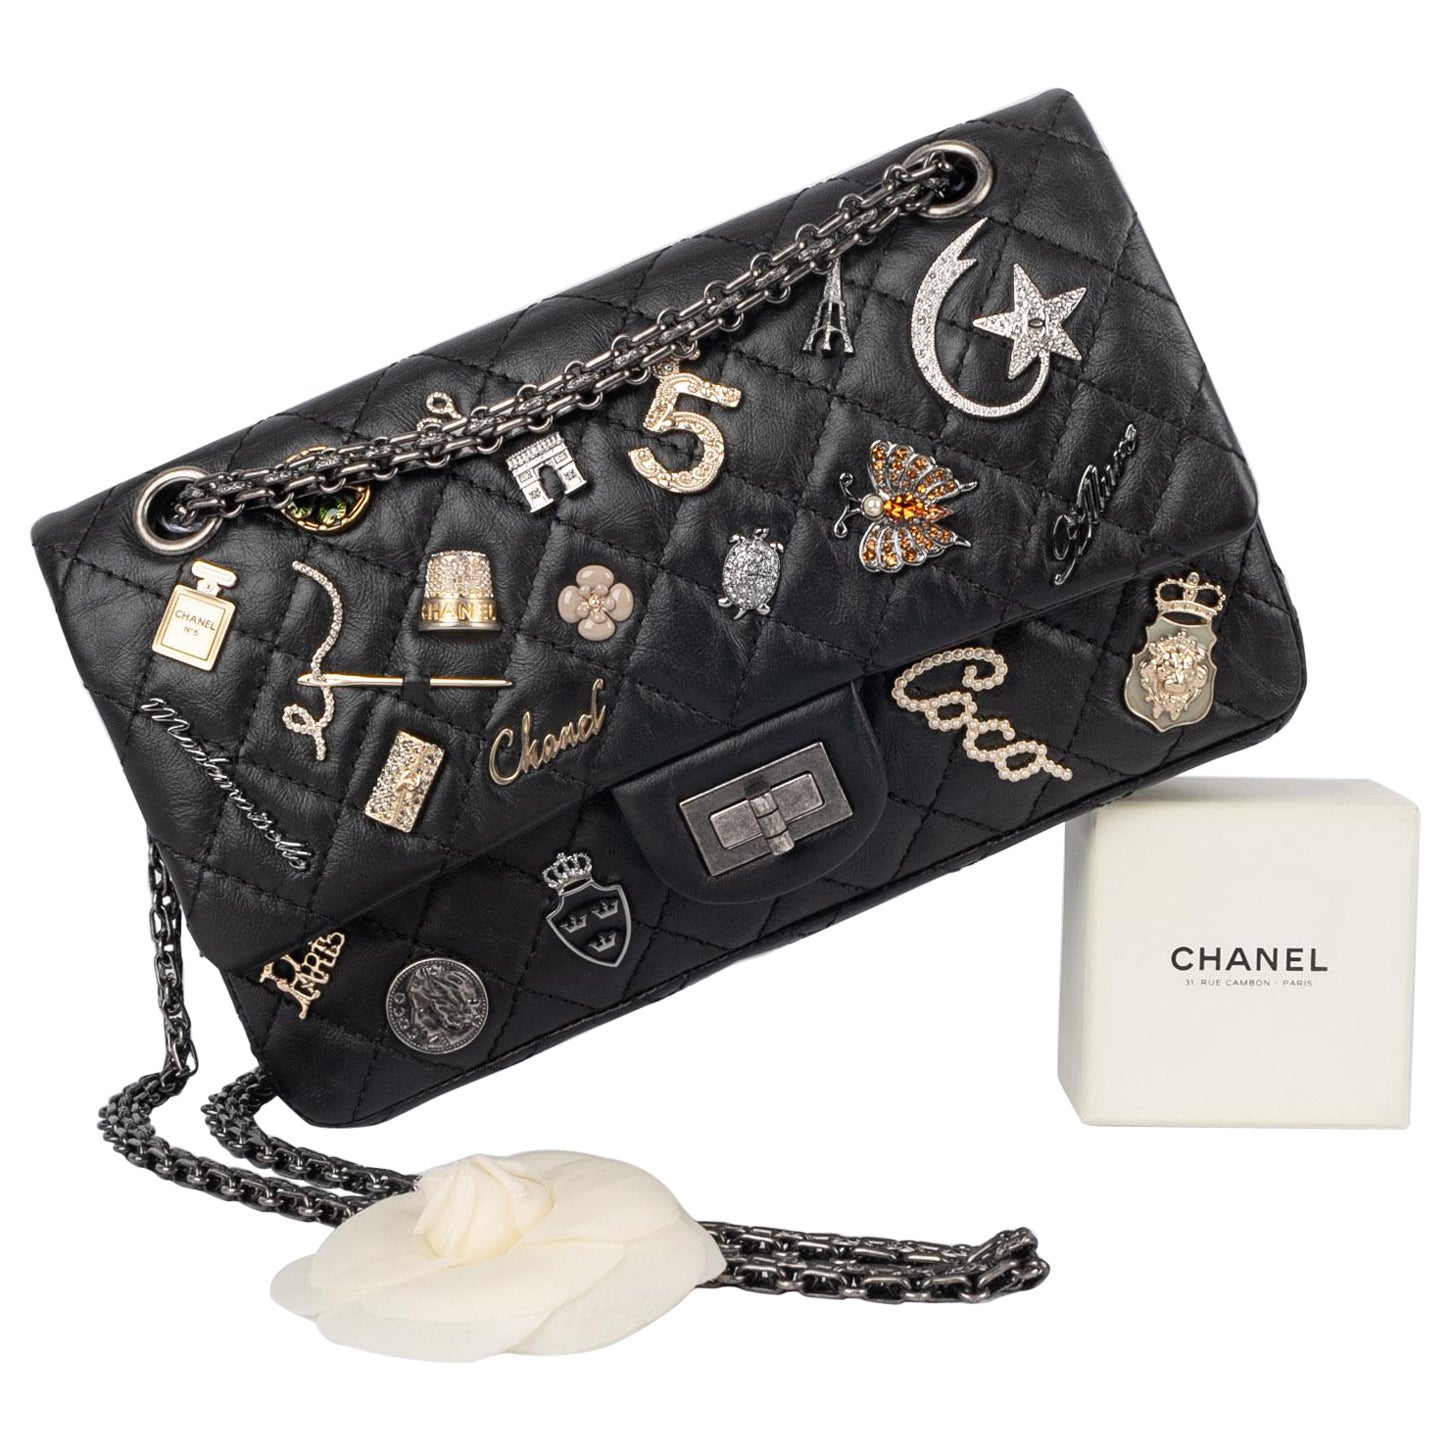 Chanel "Lucky charms" 2.55 bag